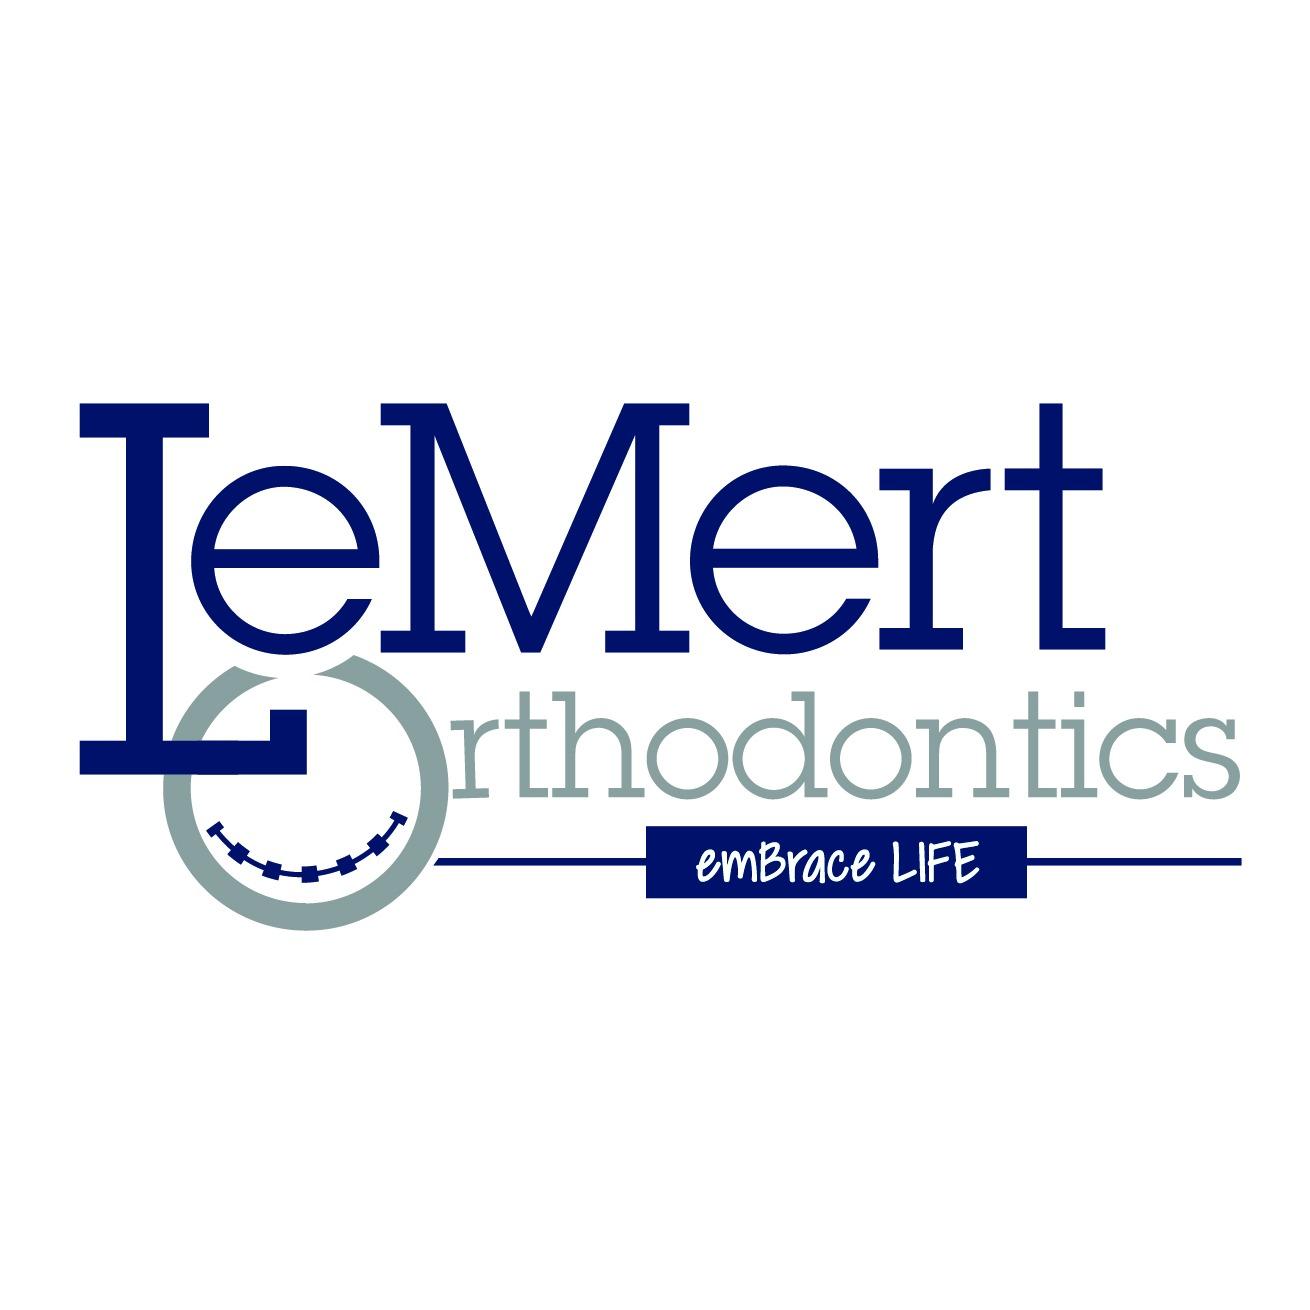 LeMert Orthodontics